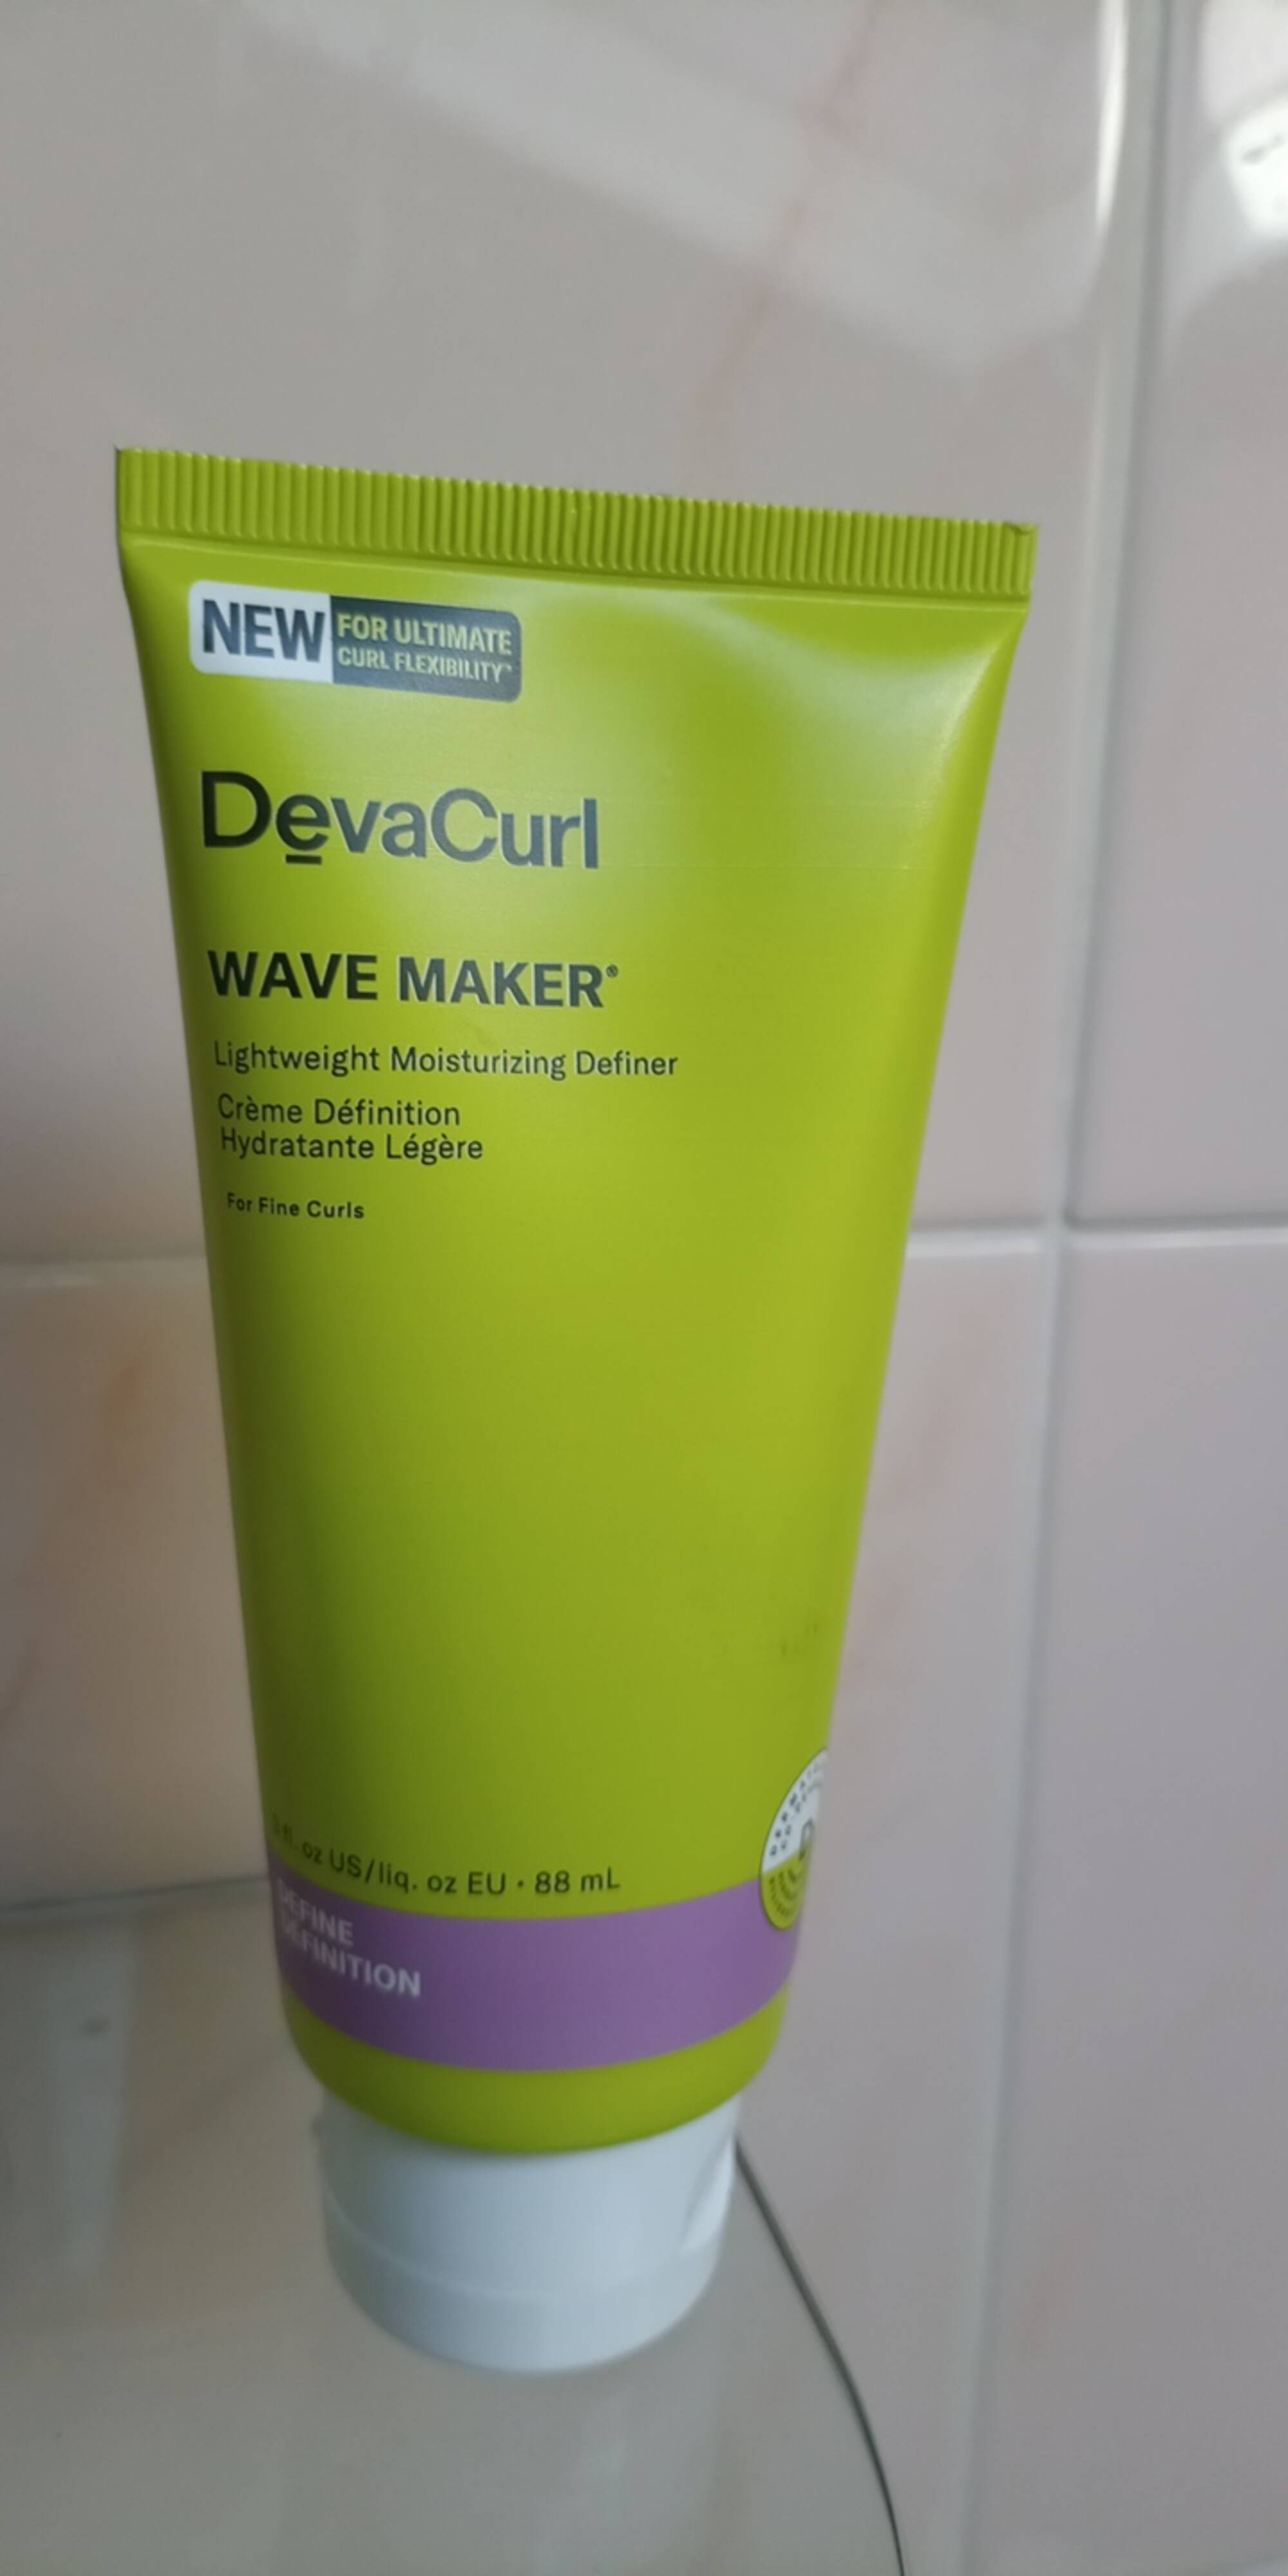 DEVACURL - Wave maker_crème définition hydratante légère